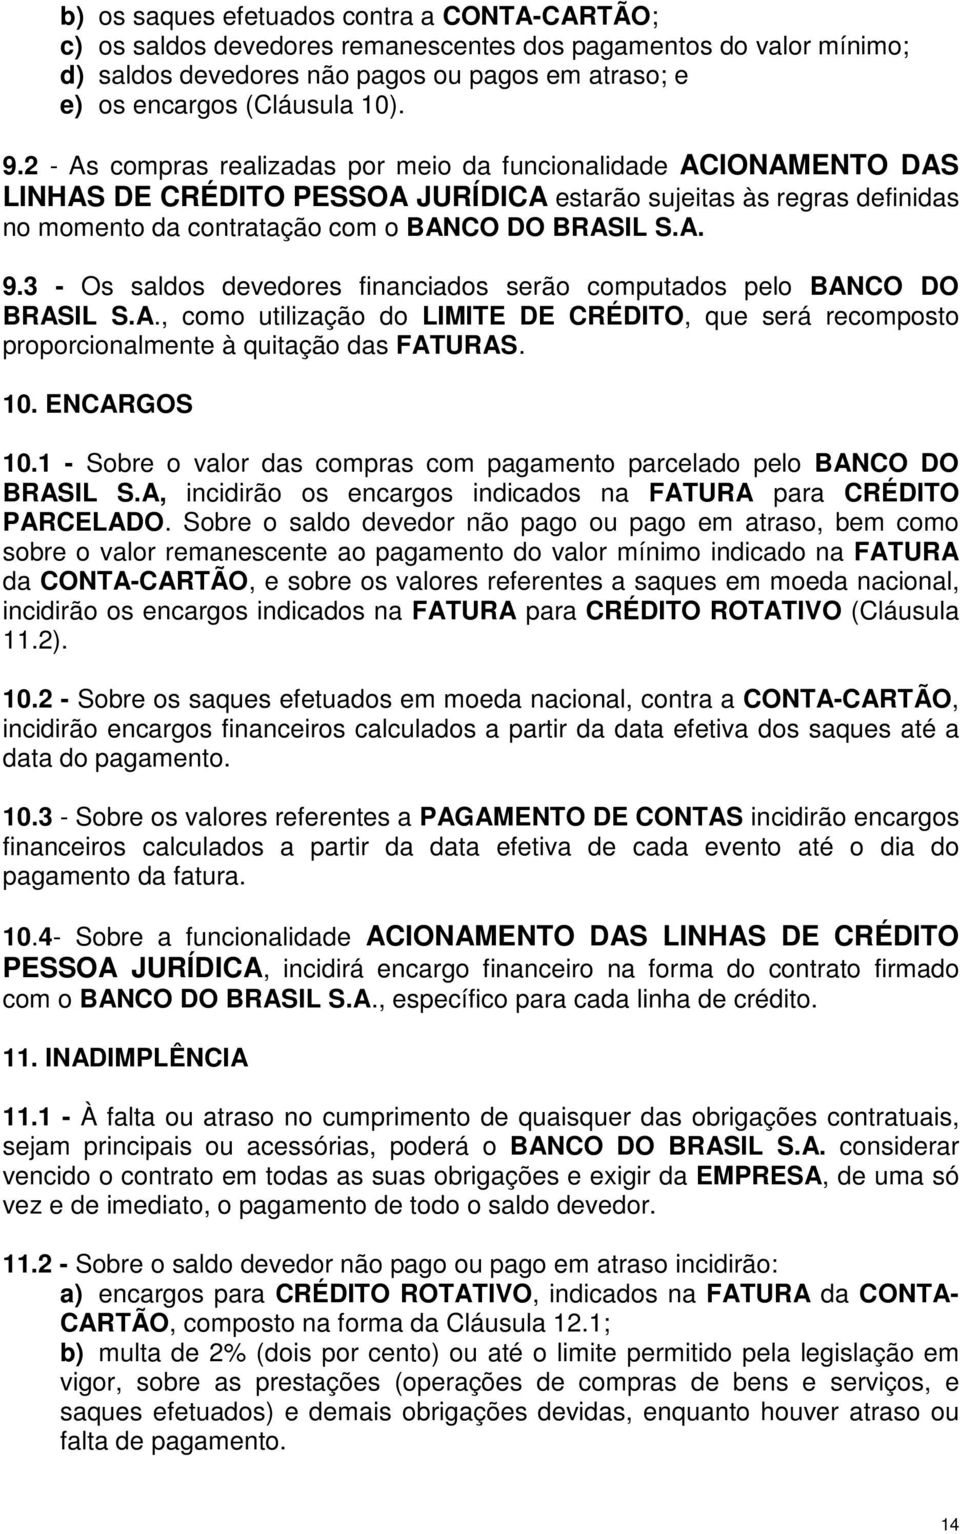 3 - Os saldos devedores financiados serão computados pelo BANCO DO BRASIL S.A., como utilização do LIMITE DE CRÉDITO, que será recomposto proporcionalmente à quitação das FATURAS. 10. ENCARGOS 10.